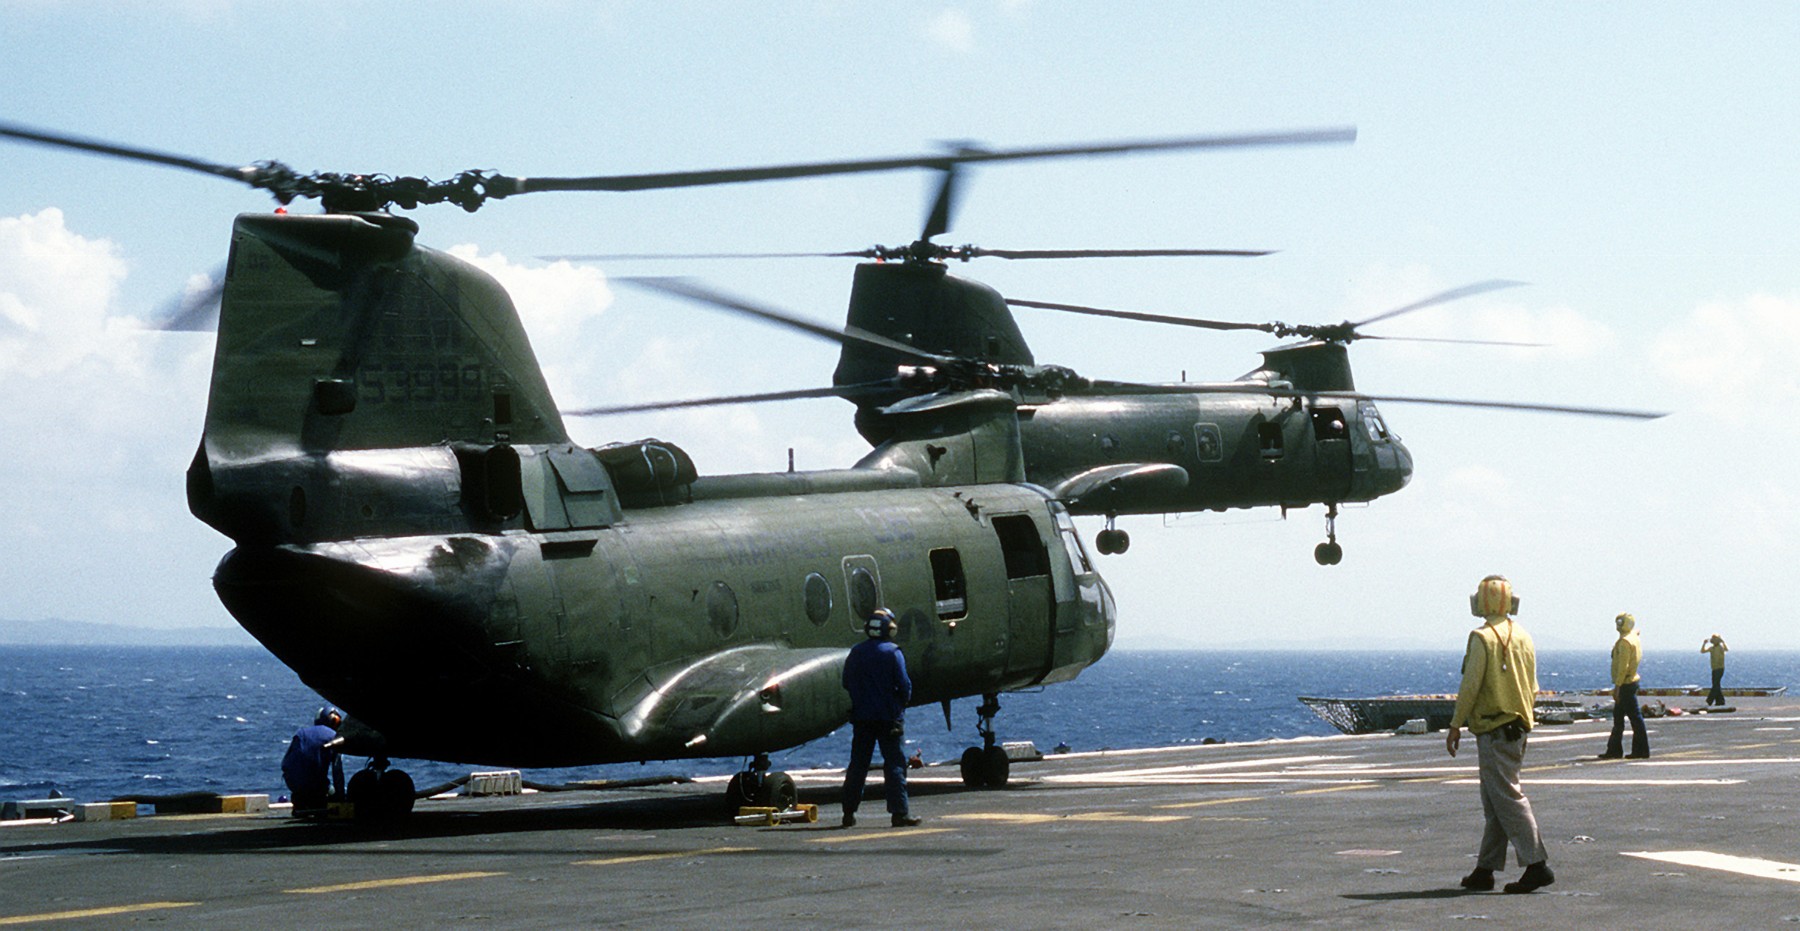 lph-2 uss iwo jima class amphibious assault ship landing platform helicopter us navy hmm-365 embarked 30